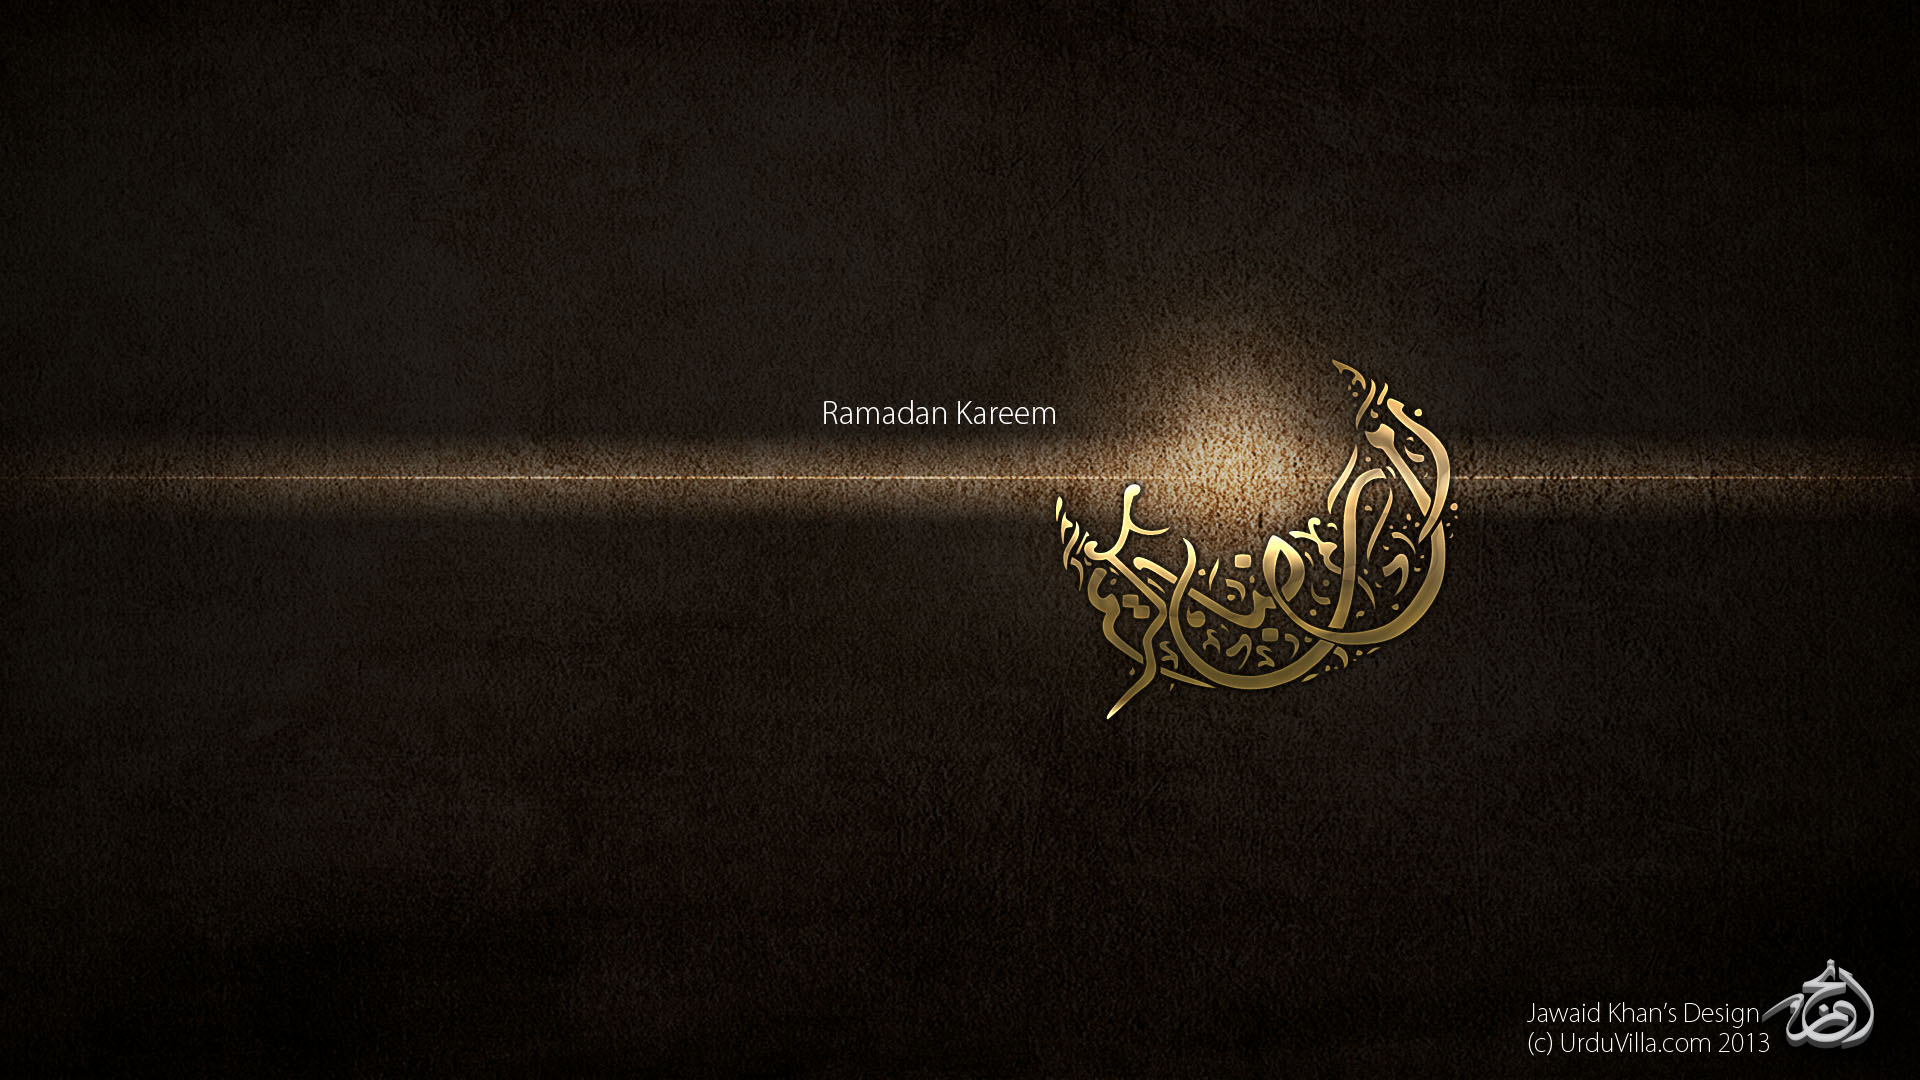 Full HD wallpaper Ramadan Kareem by 475 on DeviantArt